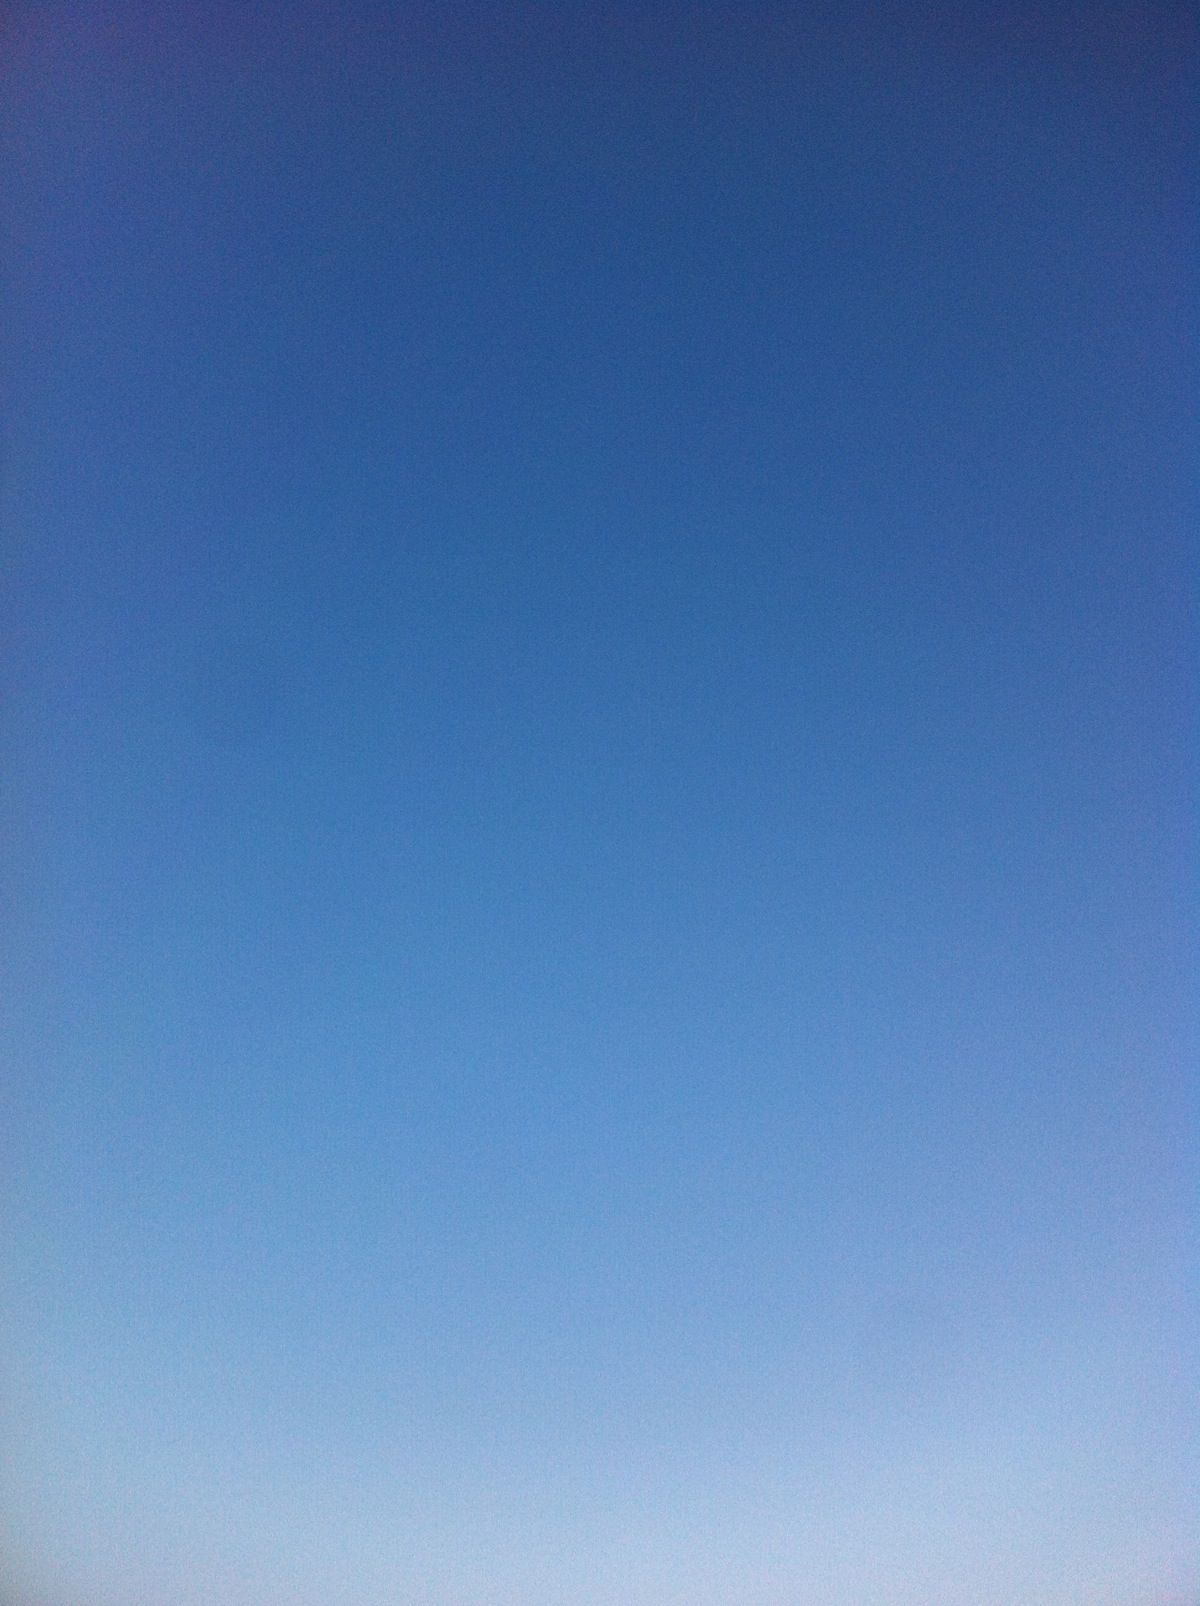 天空渐变蓝壁纸